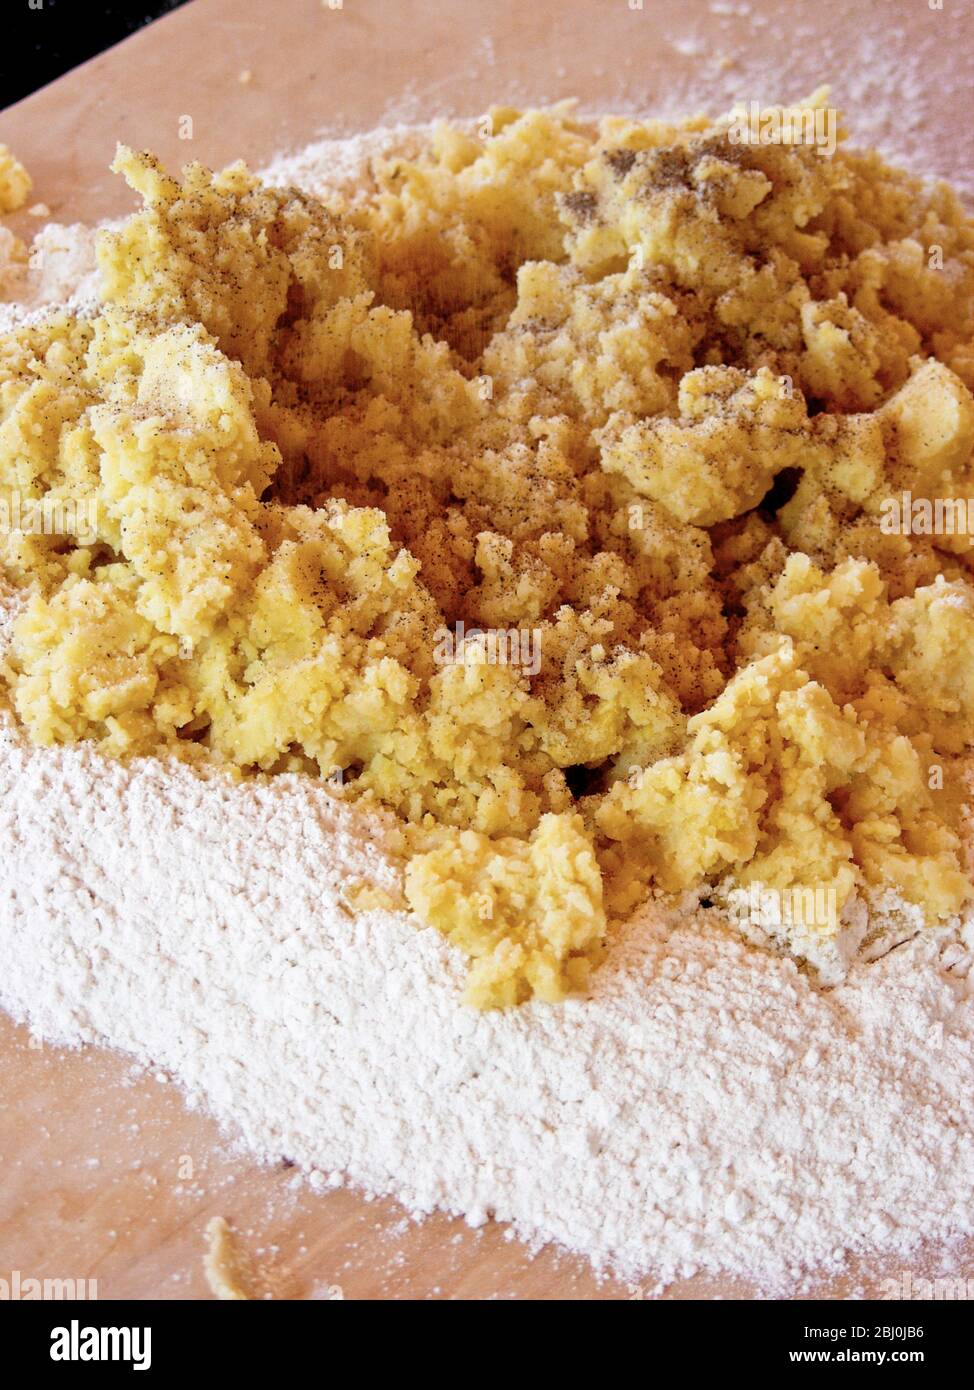 Mélanger la pomme de terre pressée et le parmesan grainé dans la farine pour faire du gnocchi. Banque D'Images